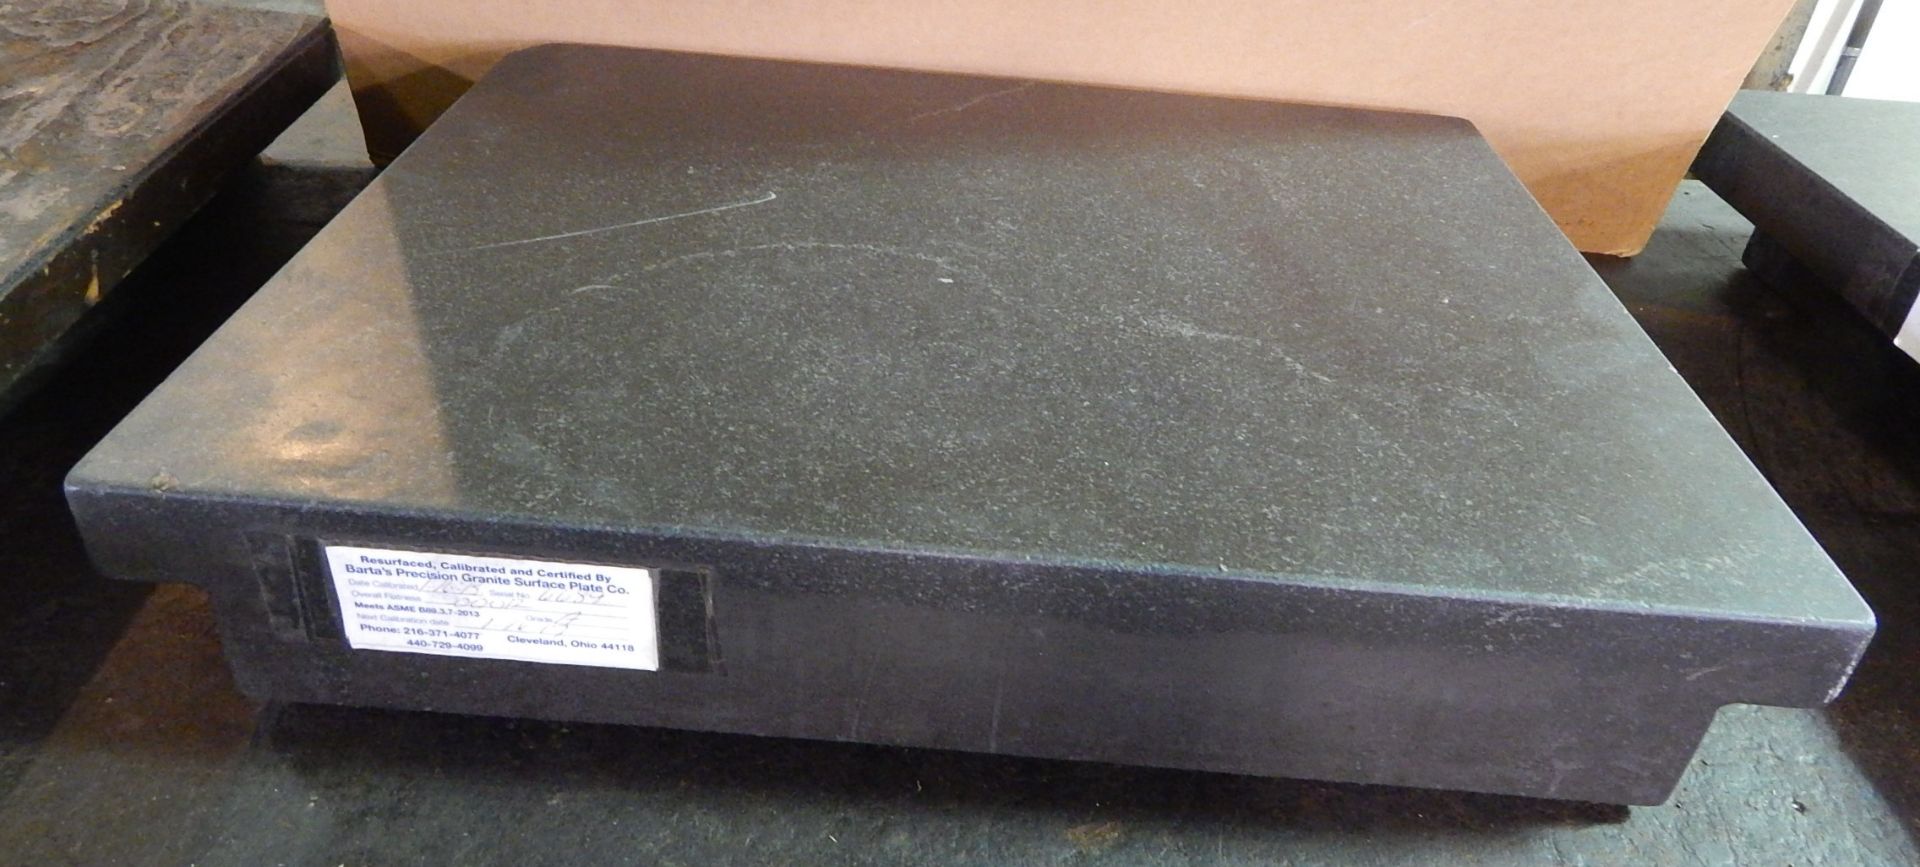 Rahn 18 In. X 24 In. X 4 In. Granite Surface Plate, 2-Ledge